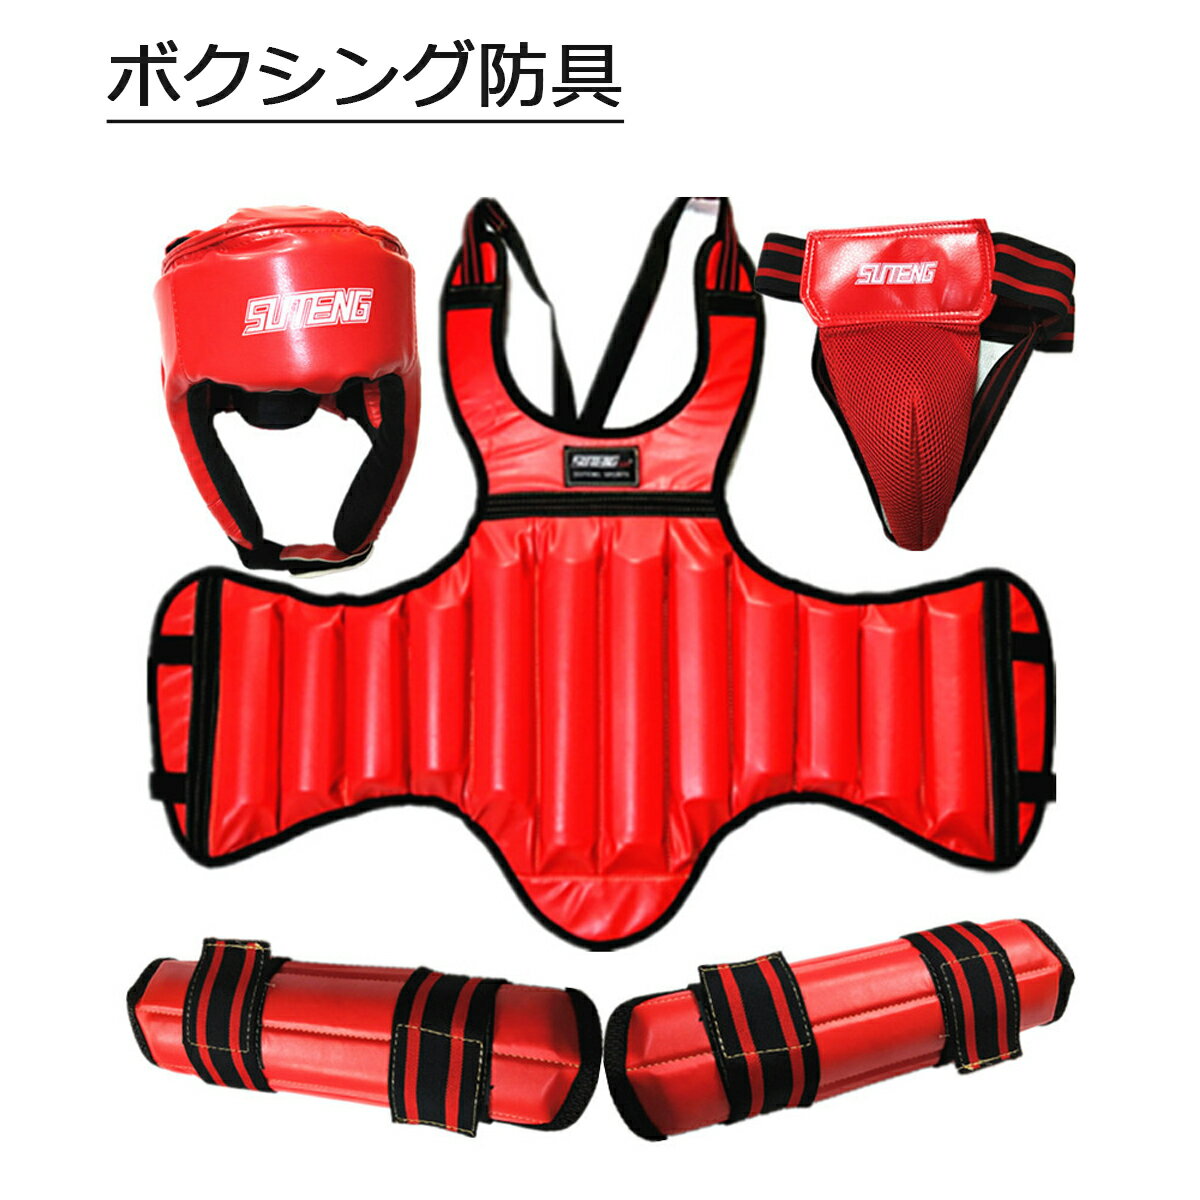 【送料無料】ボクシング防具 全身保護 格闘技用 お得4セット